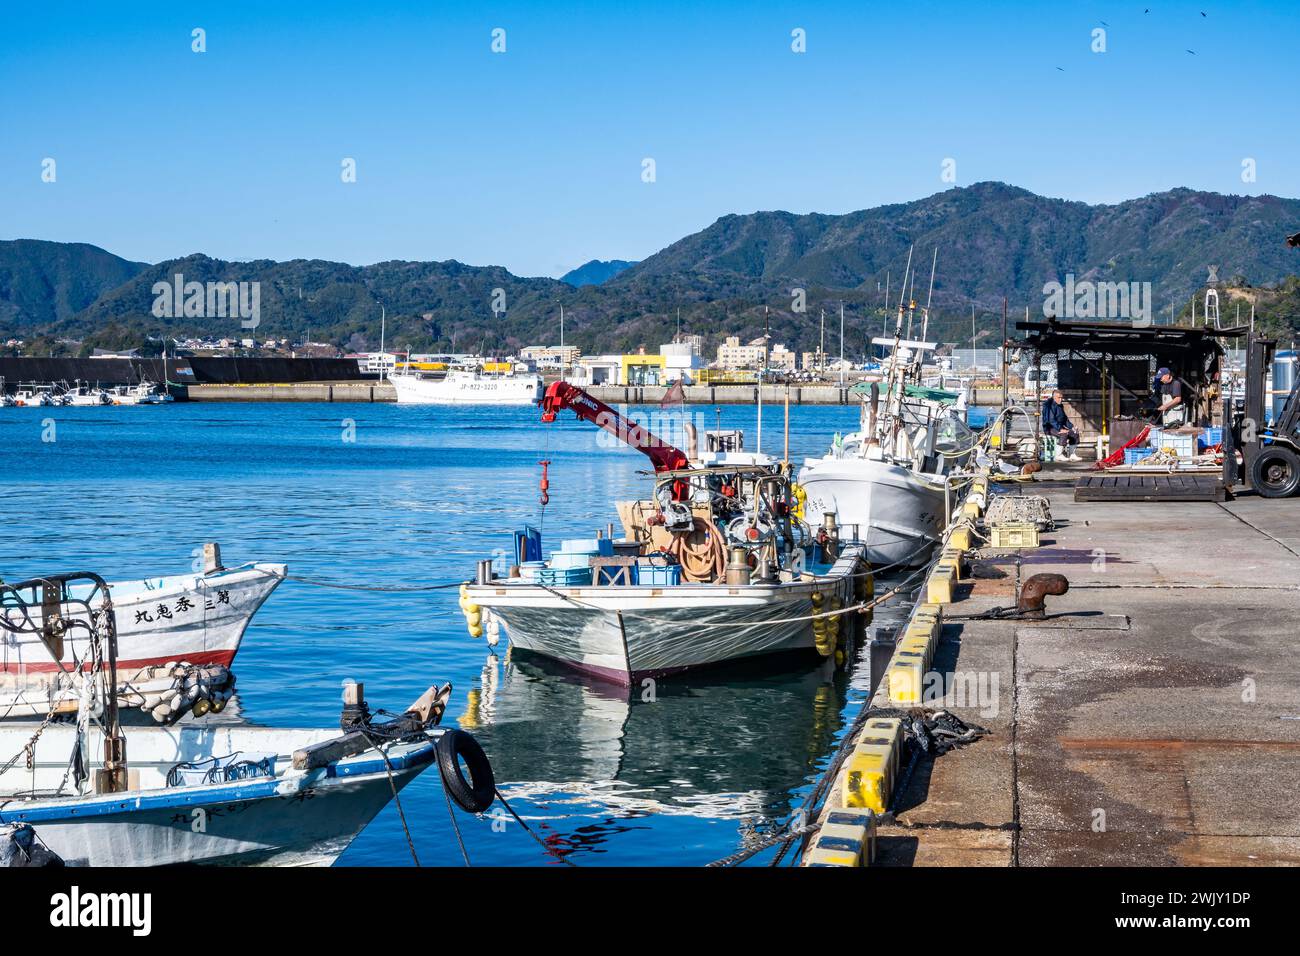 Bateaux de pêche au port de Kadogawa, Japon. Banque D'Images